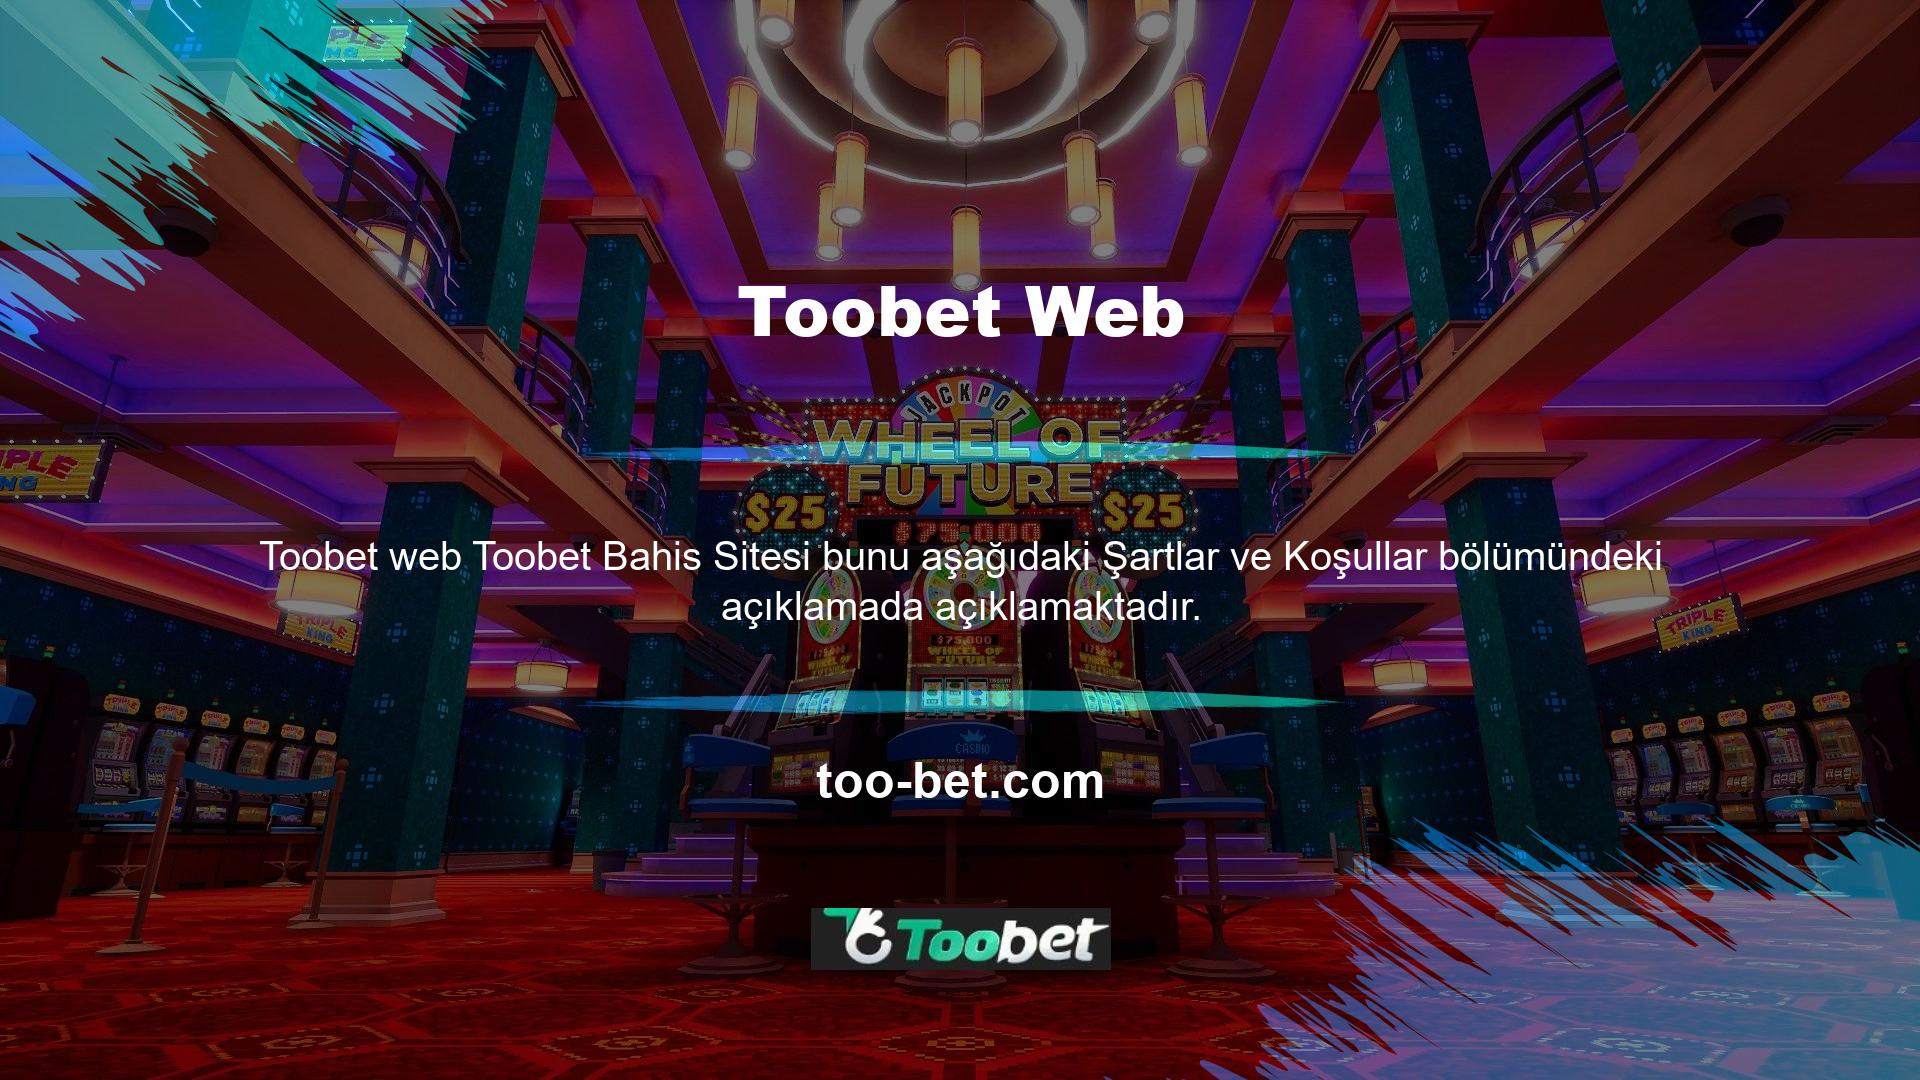 Peki bir kullanıcı Toobet bahis sitesine üye olmak için hangi adımları atmalıdır? Çok sayıda sahte Toobet web sitesi olduğundan, bunu yaparken çok dikkatli olmak önemlidir